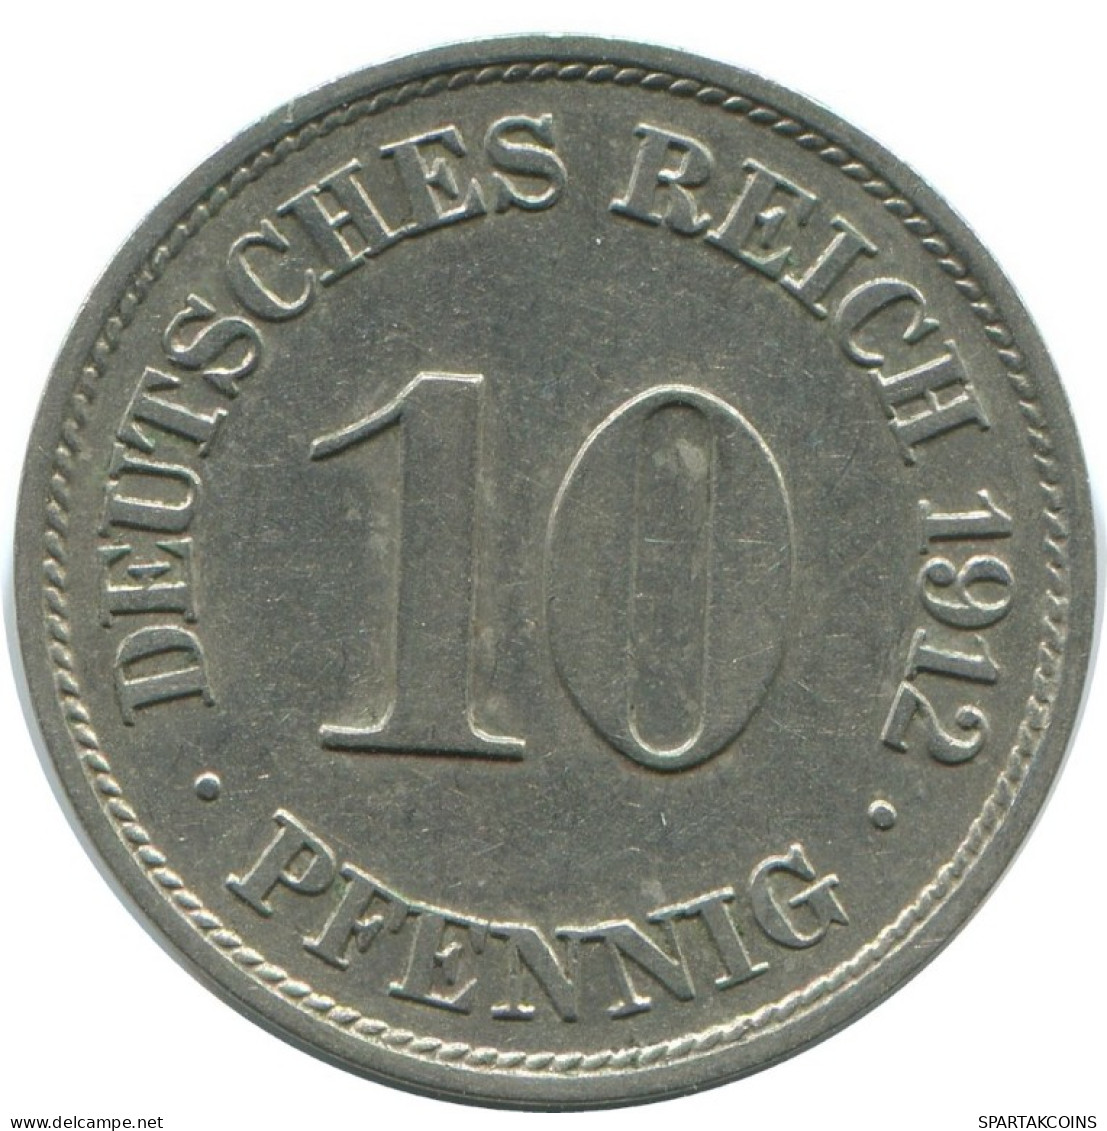 10 PFENNIG 1912 J ALEMANIA Moneda GERMANY #AE531.E.A - 10 Pfennig